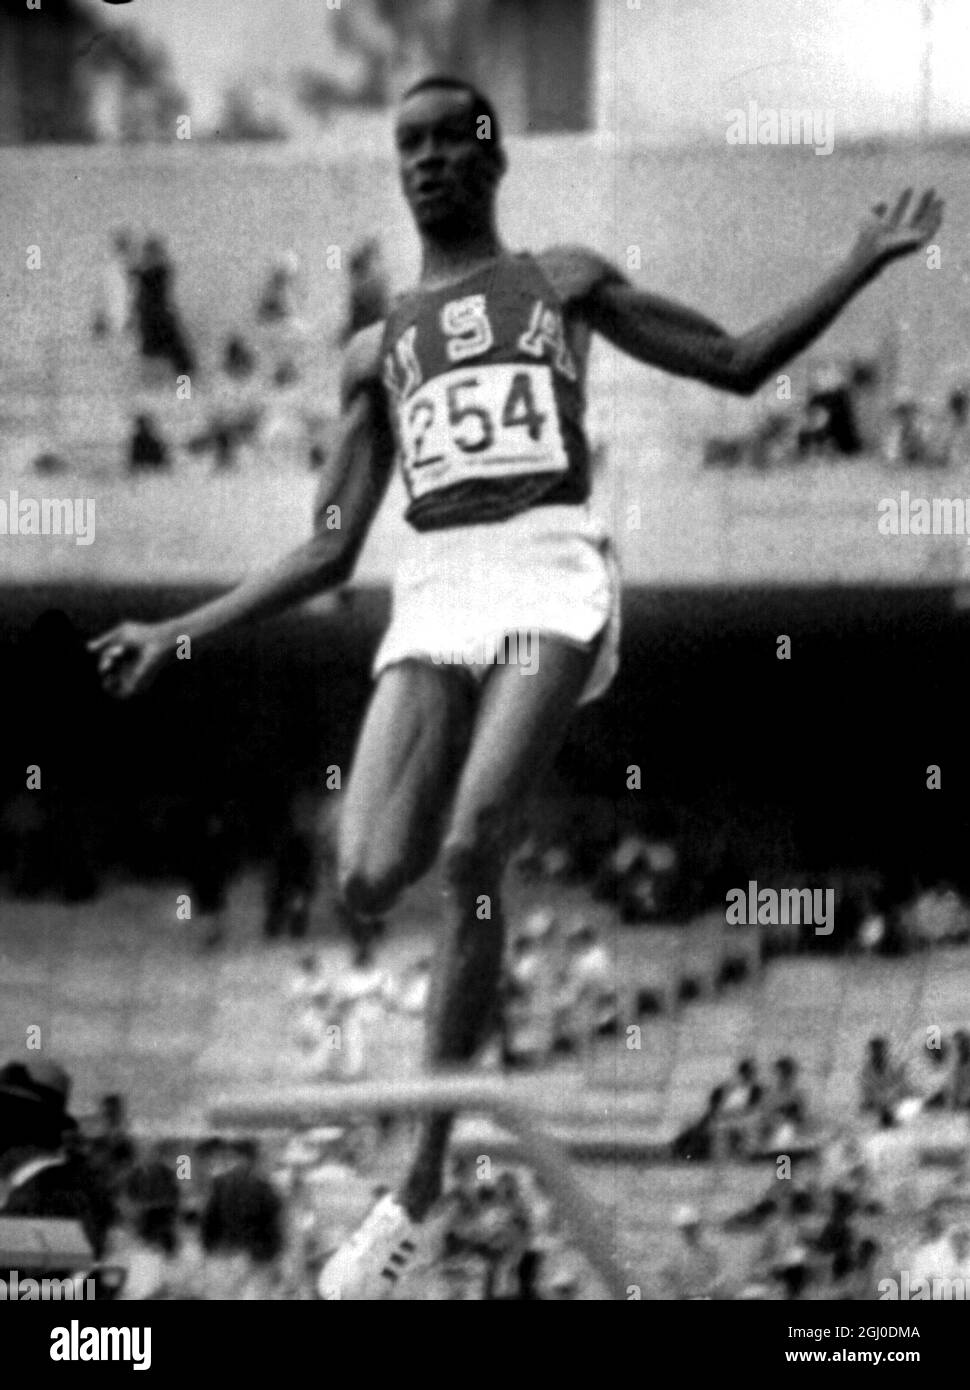 Olimpiadi del 1968, Messico. Bob Beamon degli Stati Uniti in azione durante l'evento maschile di salto lungo in cui ha frantumato il record mondiale di più di due piedi, in un salto di 29 piedi 2 & 1-2 pollici per vincere una medaglia d'oro olimpica. 18 ottobre 1968. Foto Stock